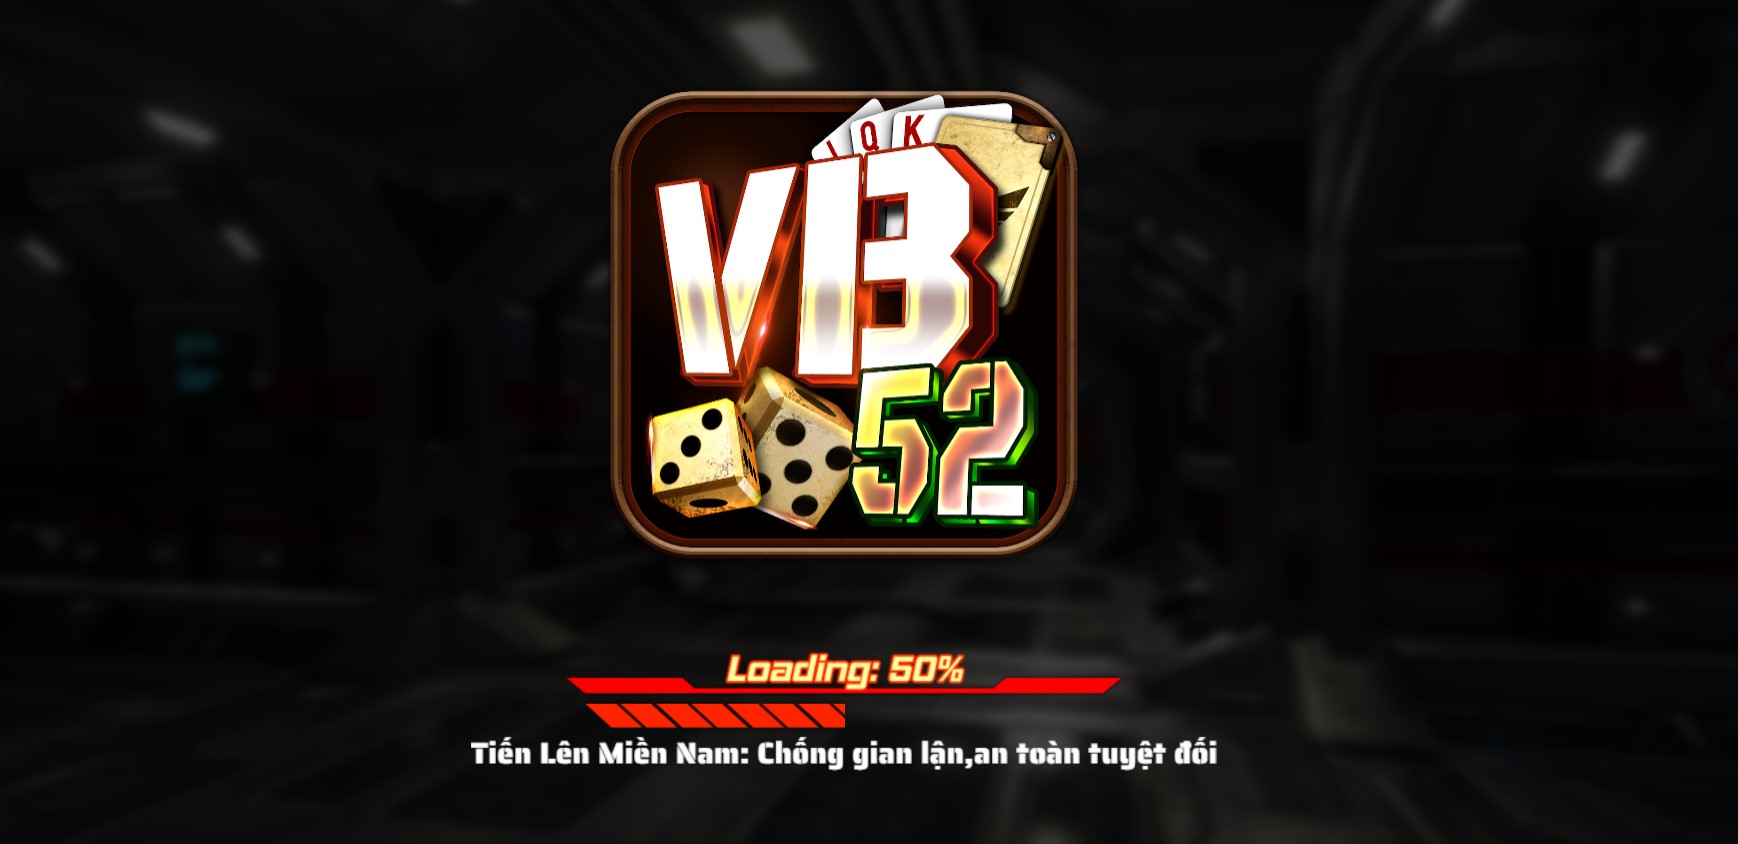 Giới thiệu Vb52 club